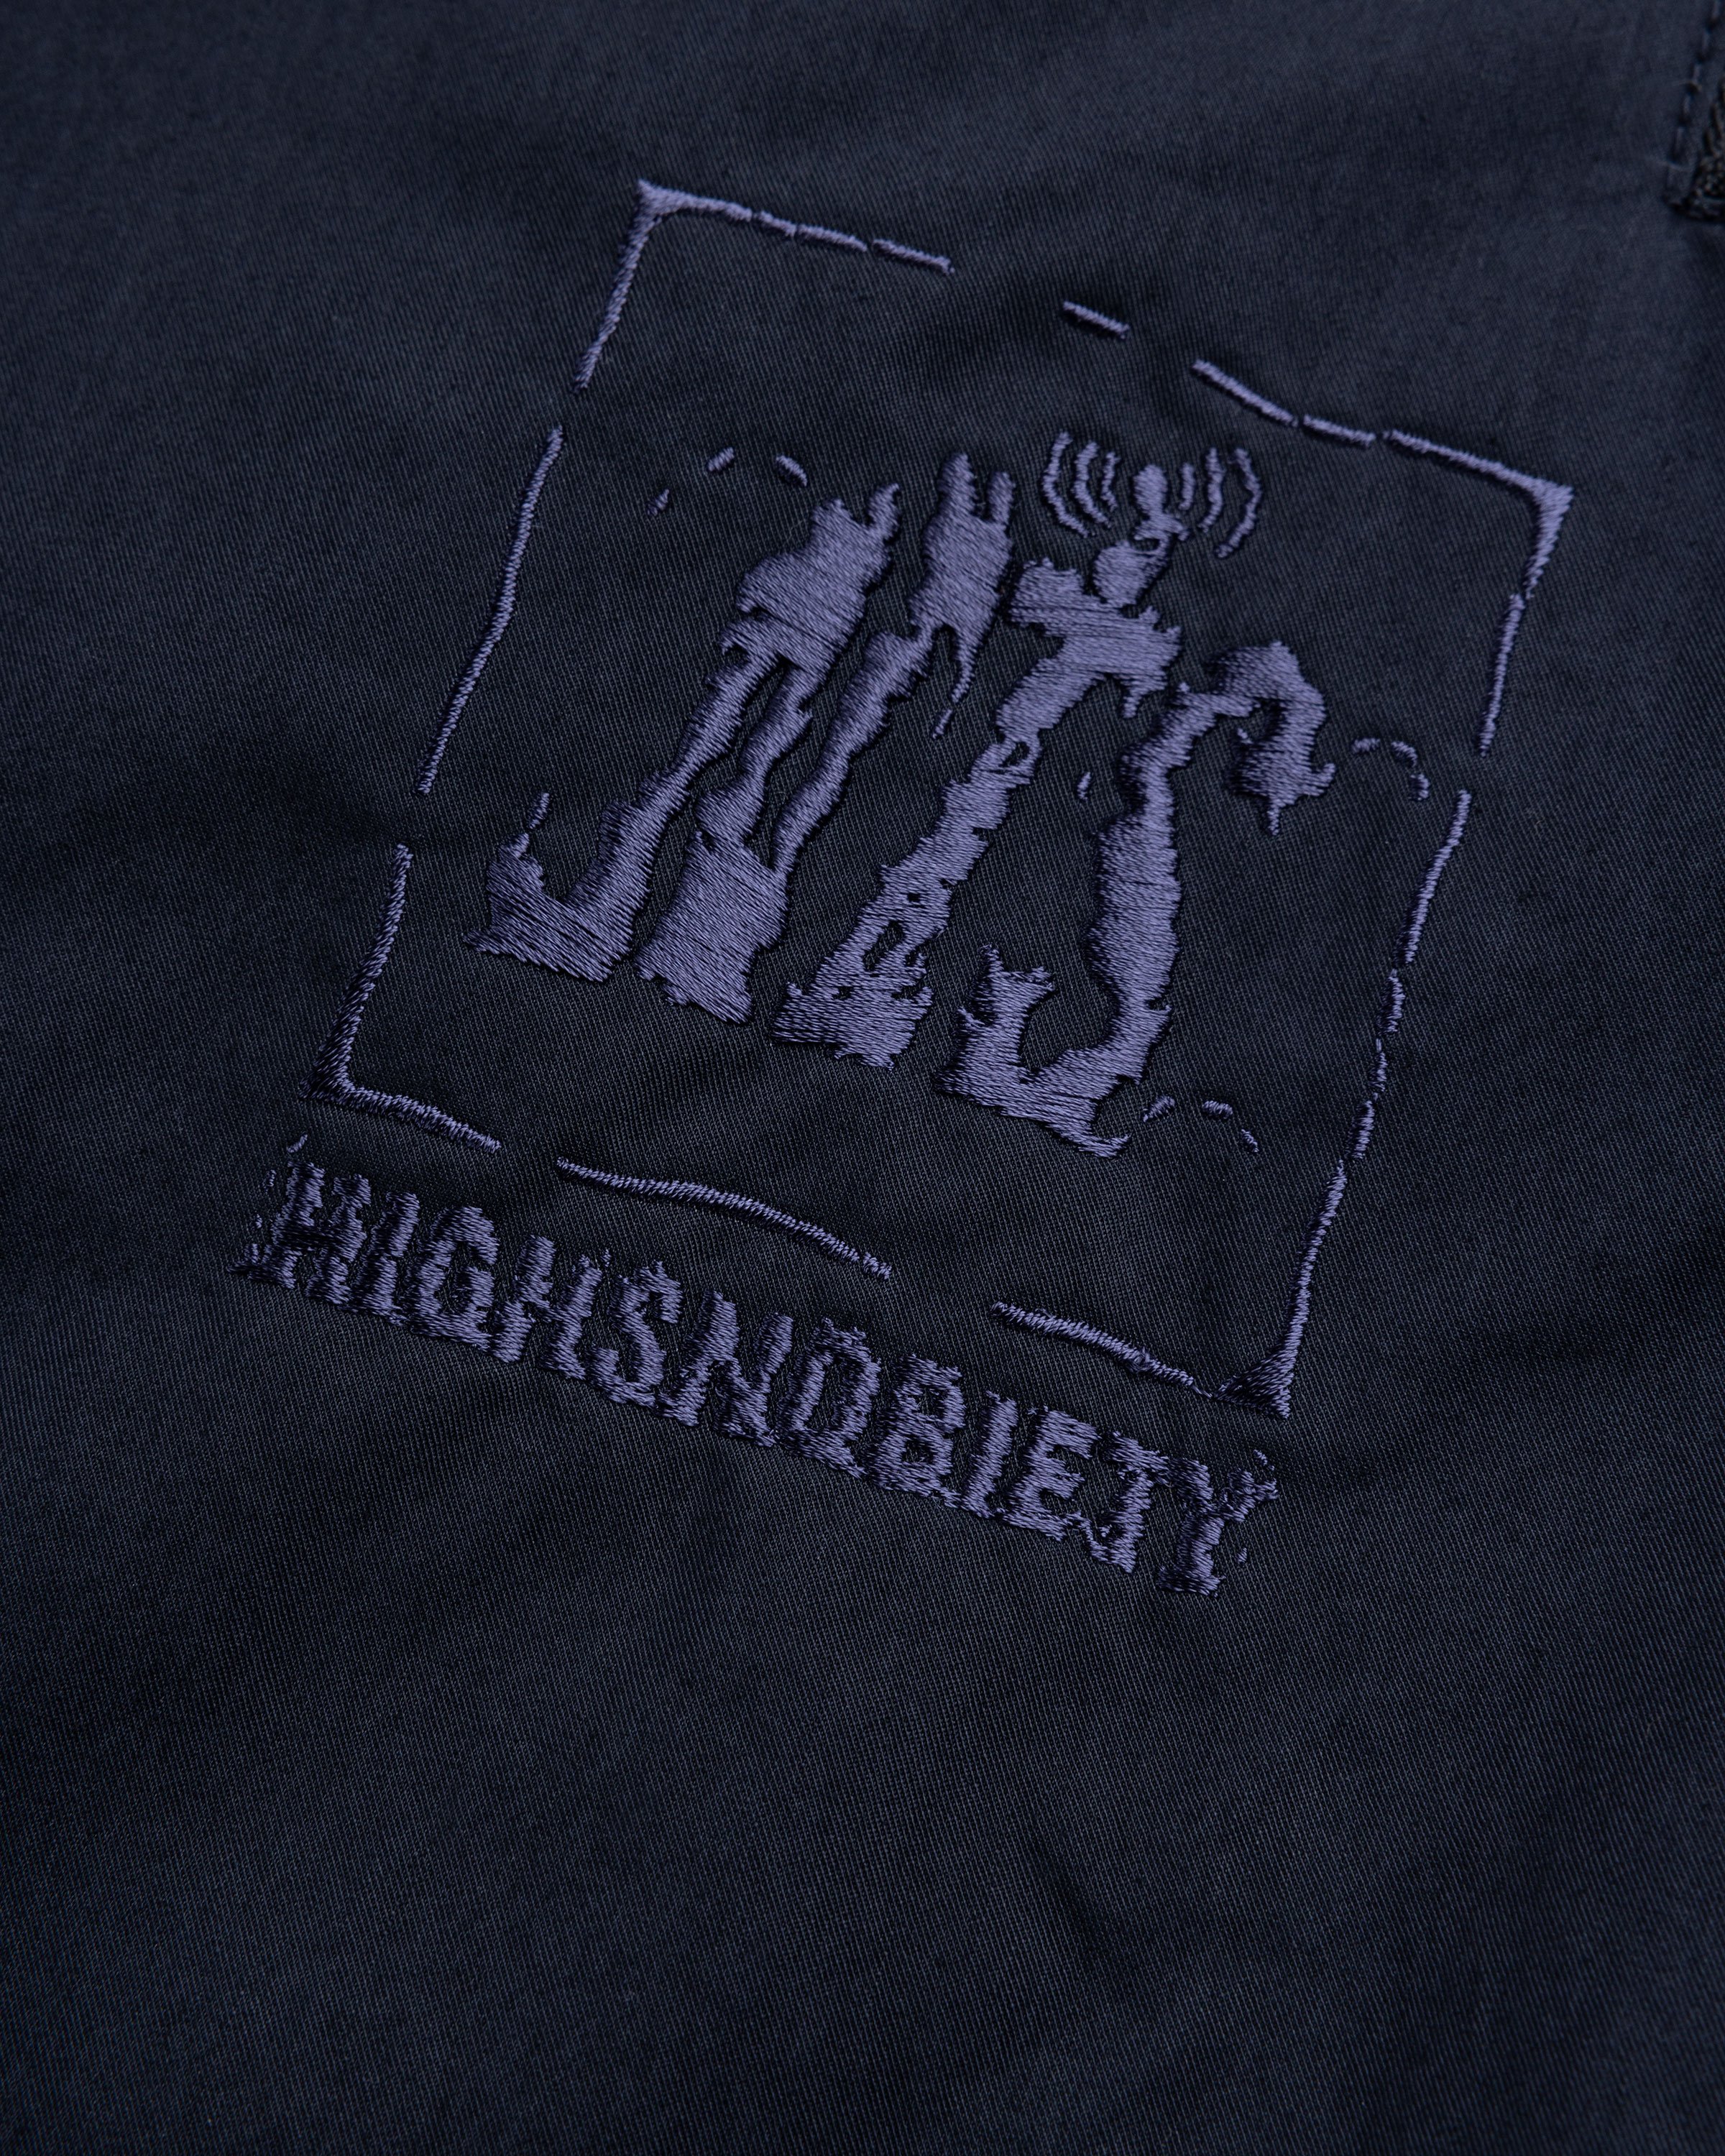 NTS x Highsnobiety - Brushed Nylon Trackpants Navy - Clothing - Black - Image 6